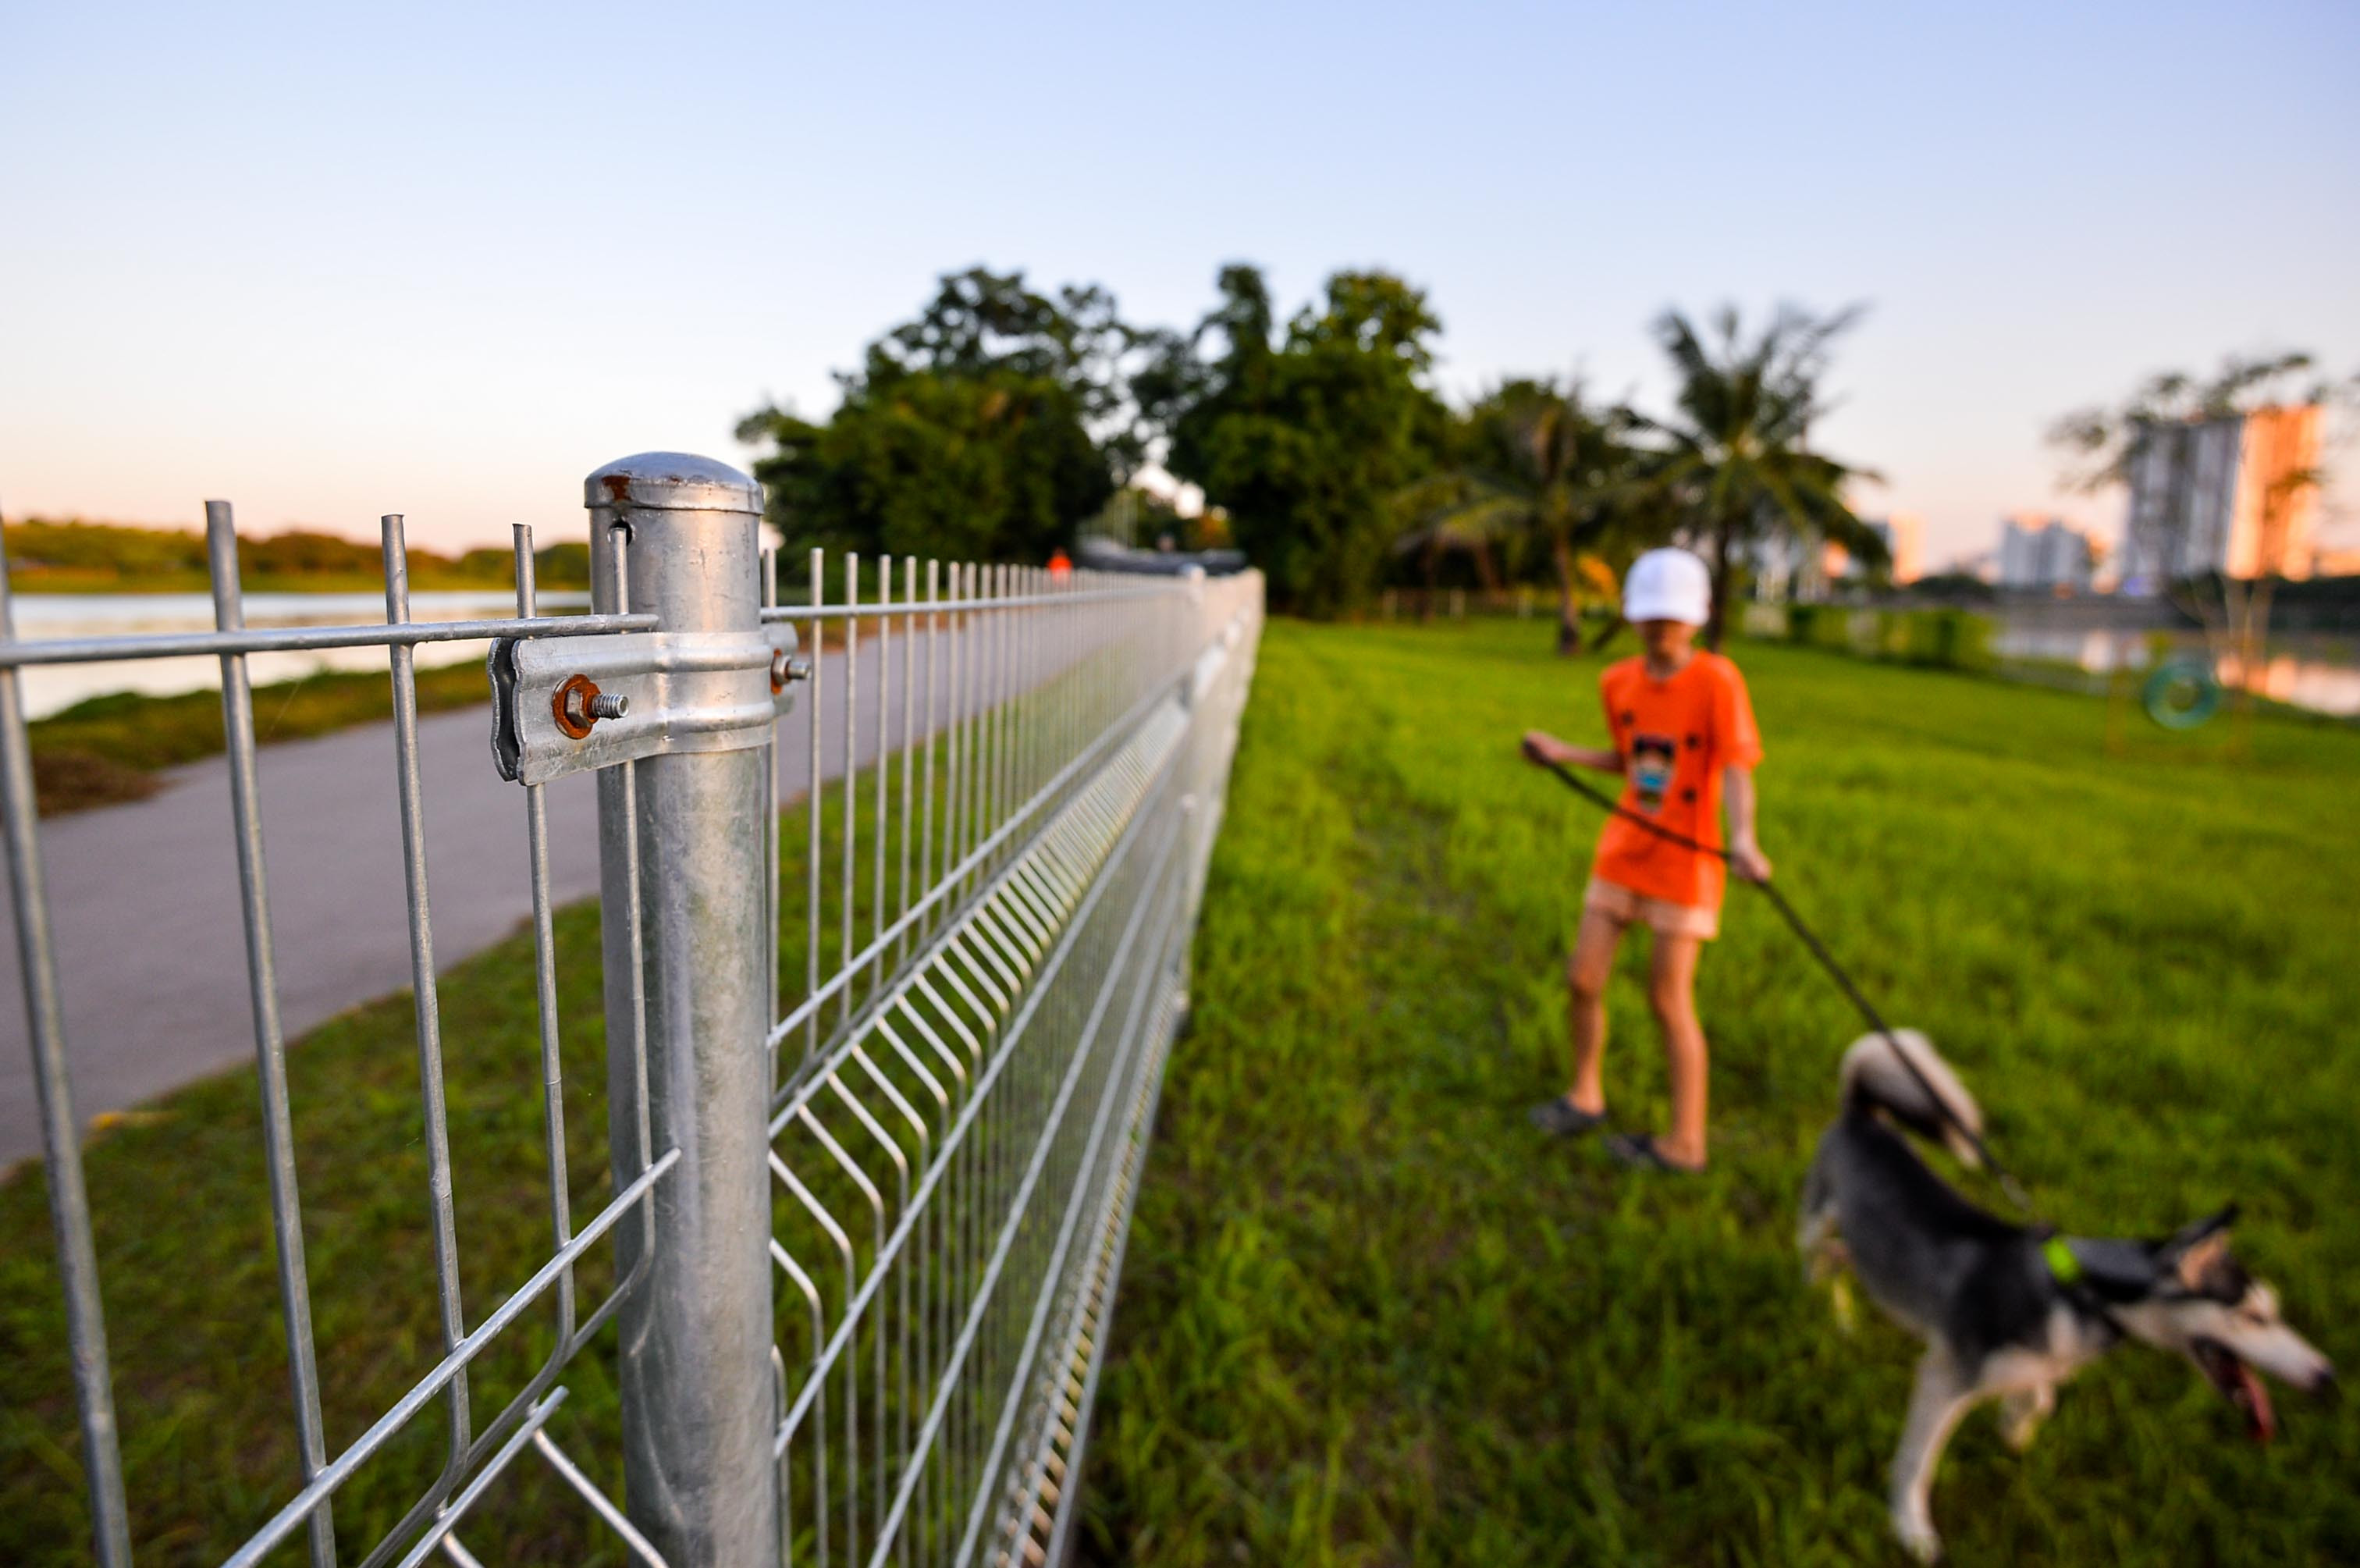 Xung quanh hàng rào thép có hộp đựng túi nylon để người nuôi dọn dẹp sau khi thú cưng đi vệ sinh. 